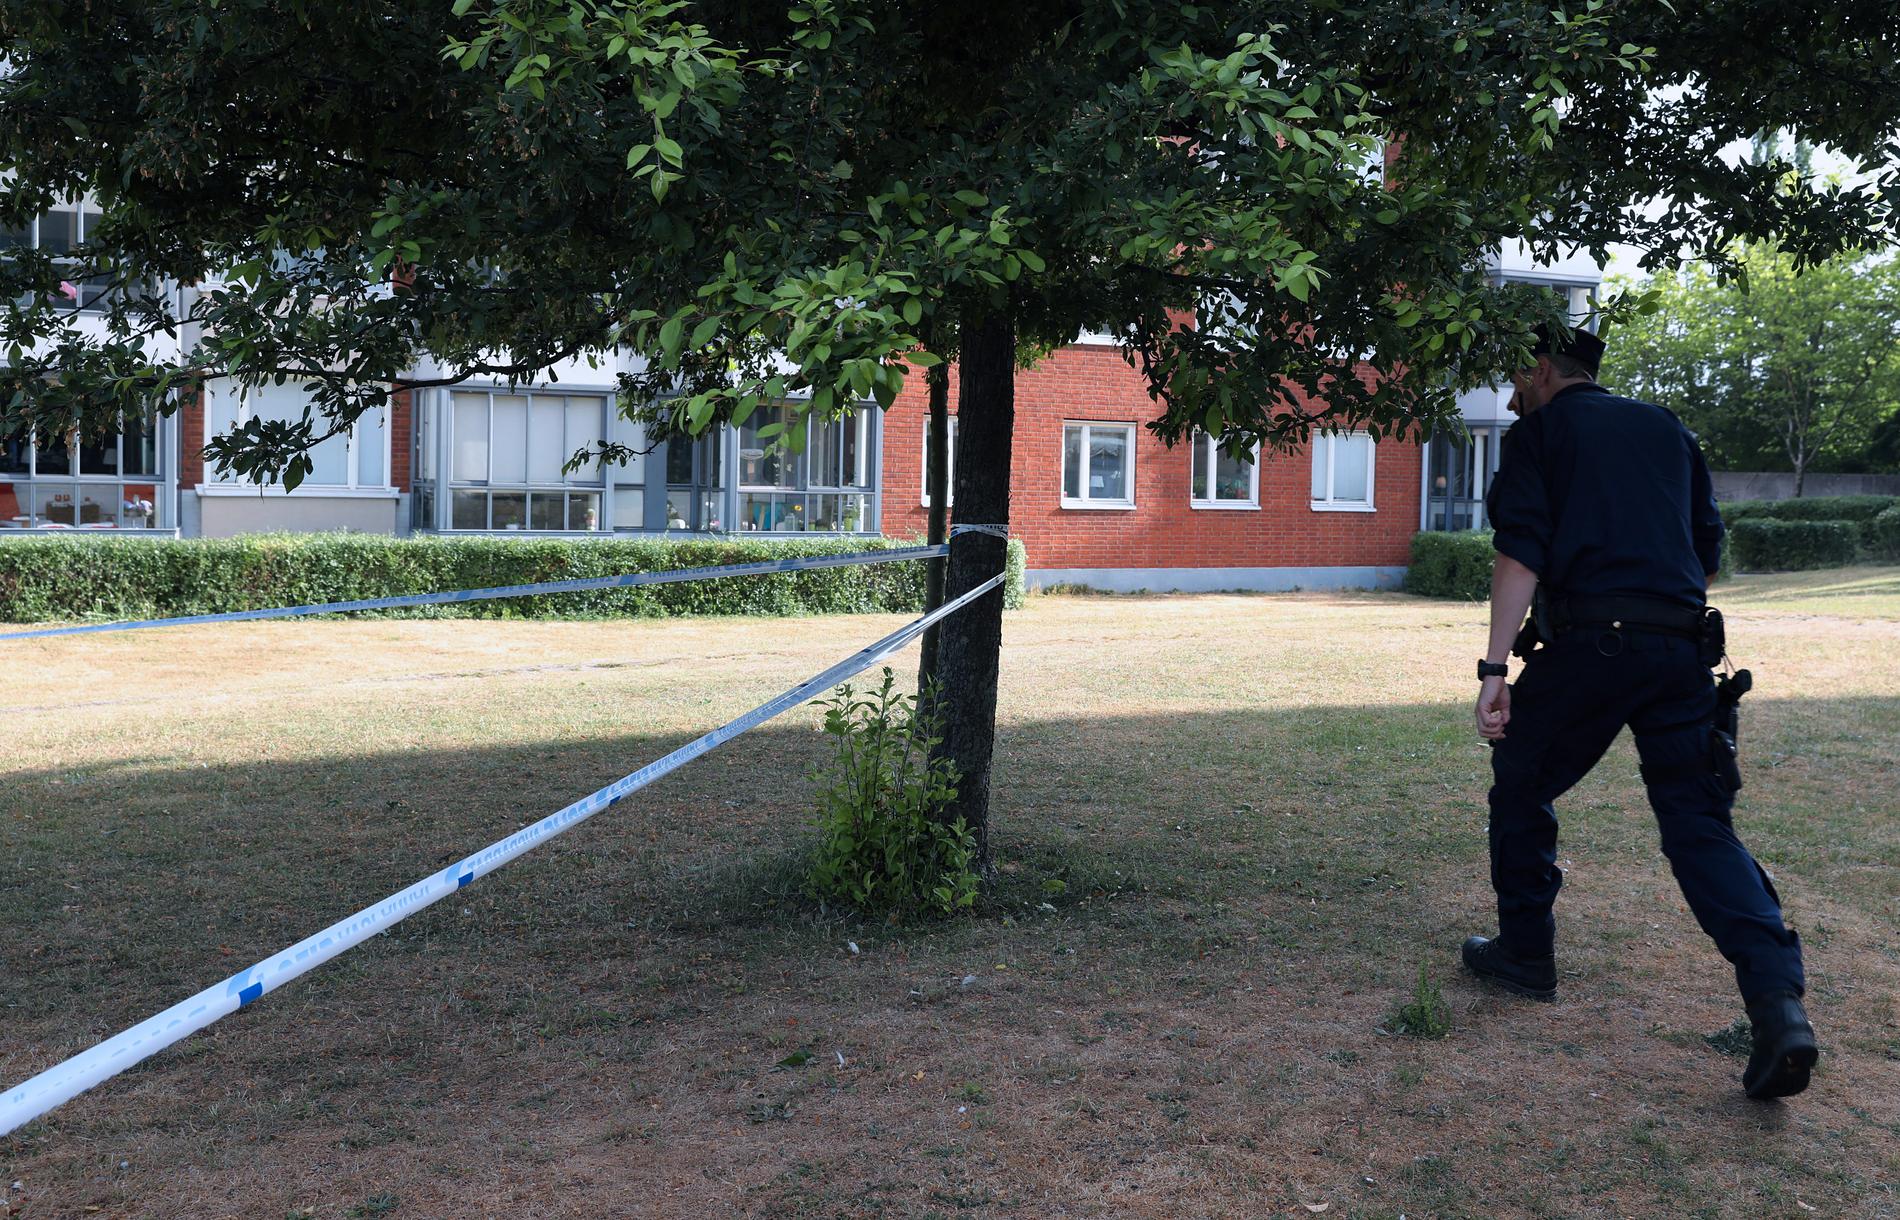 Polis på plats i Arlöv efter misstänkt överfallsvåldtäkt.